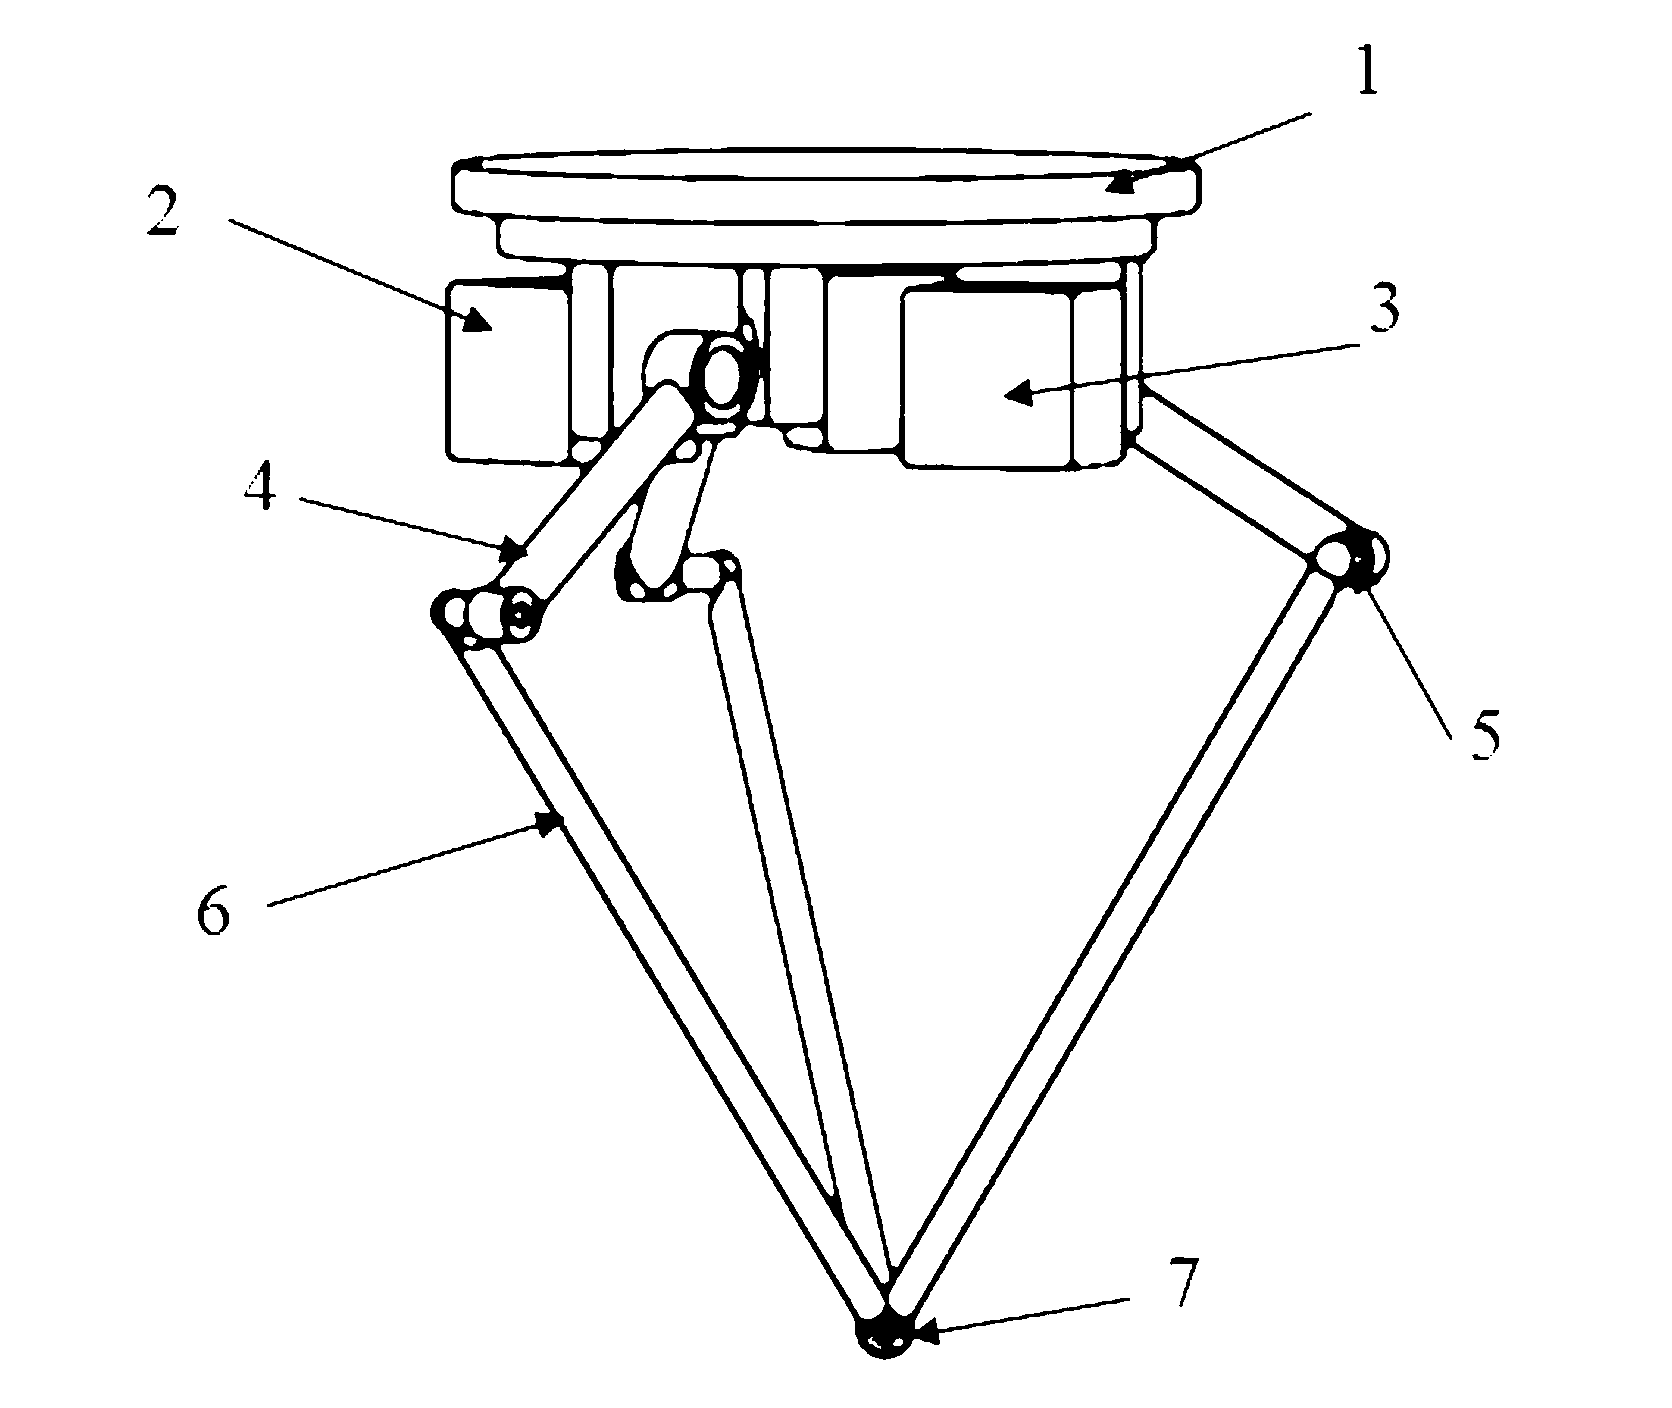 Quadruped stair climbing robot mechanism